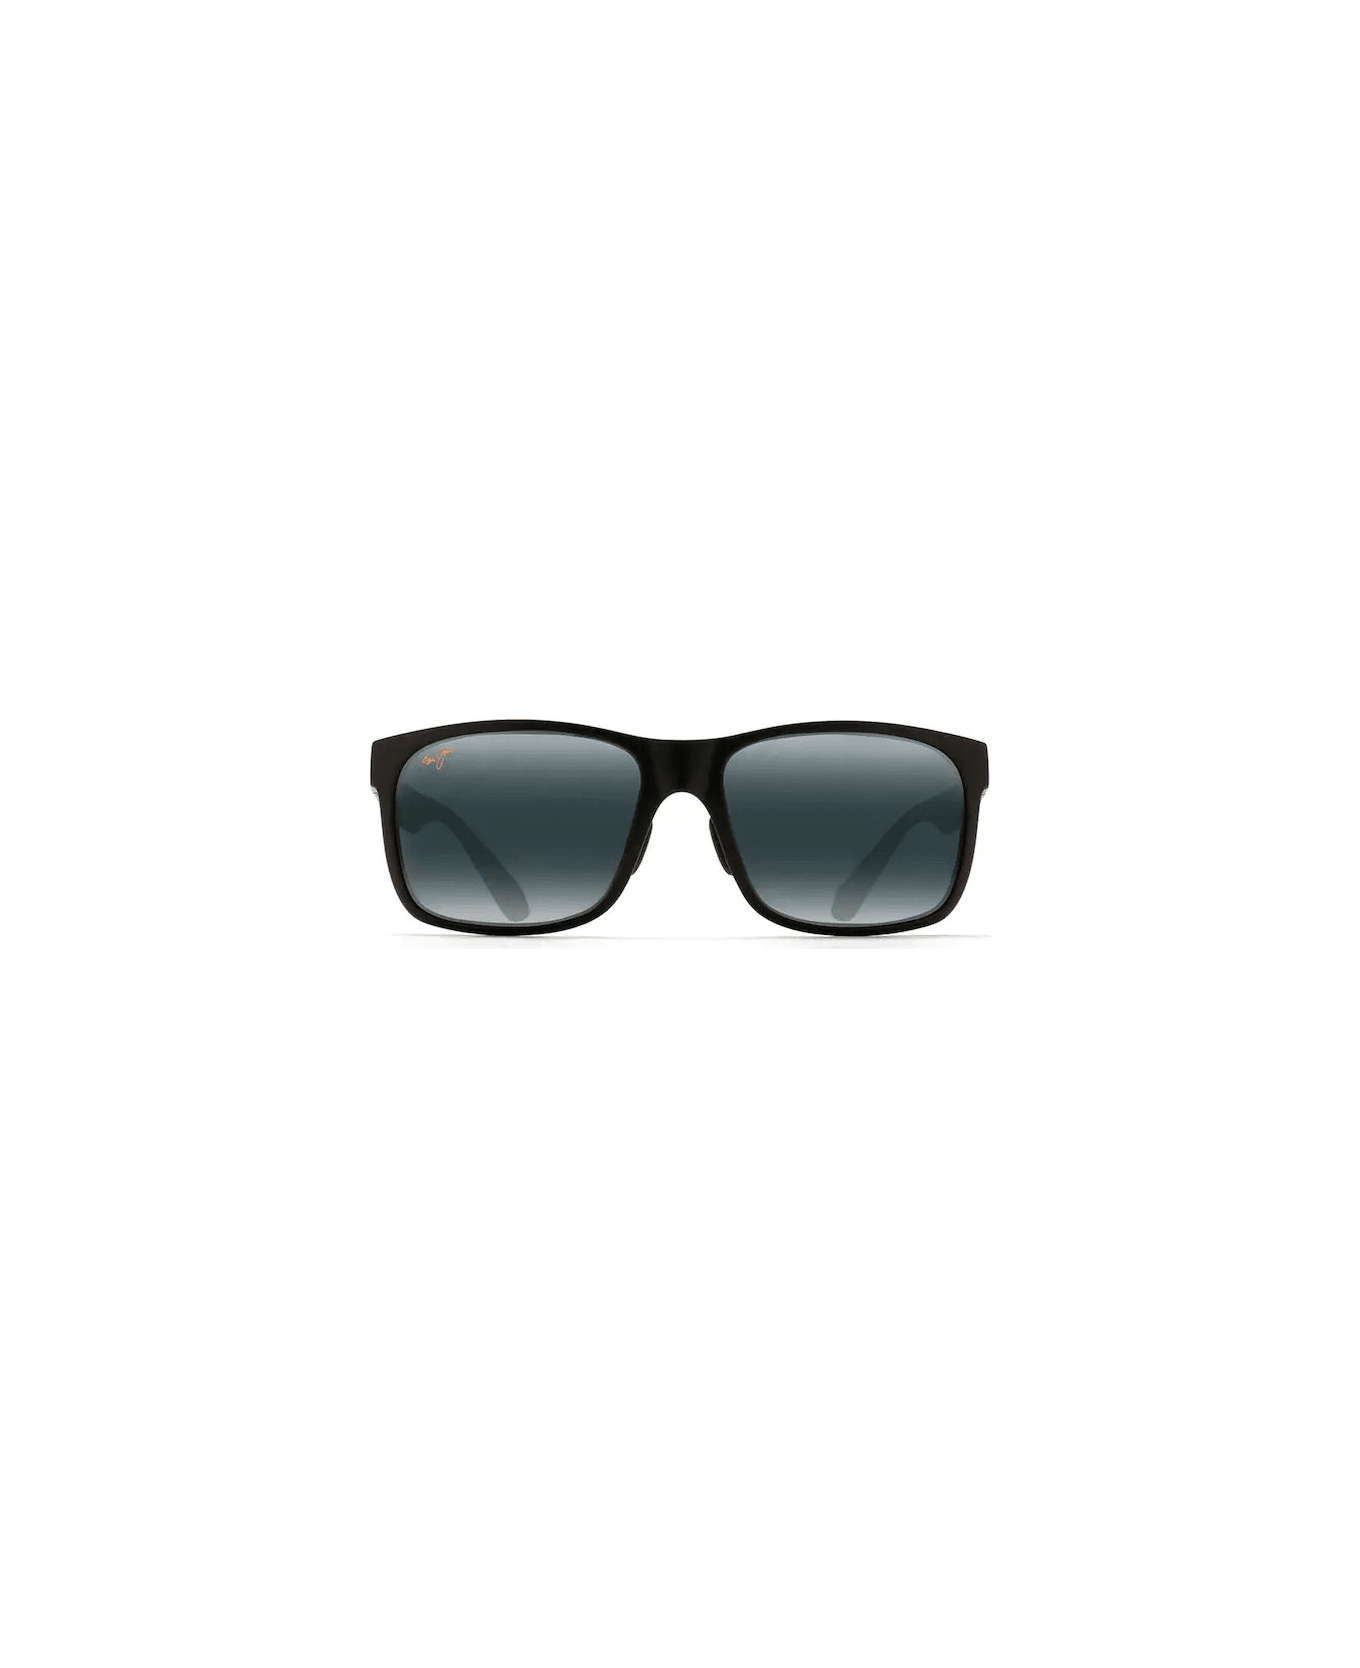 Maui Jim Red Sands 432-2M Sunglasses - Nero lente grigia